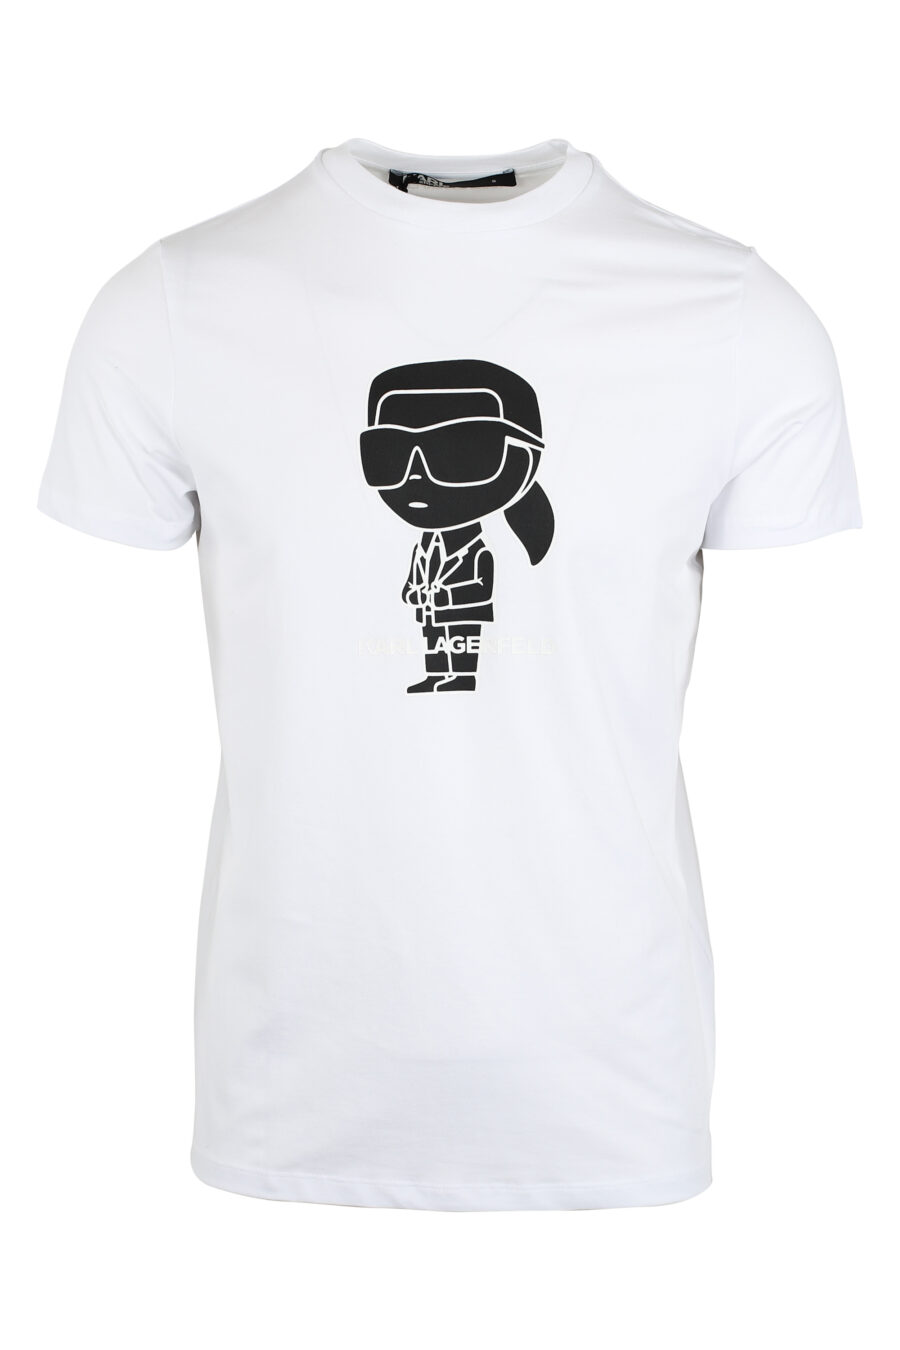 T-shirt branca com maxilogo "karl" preto em contraste - IMG 9490